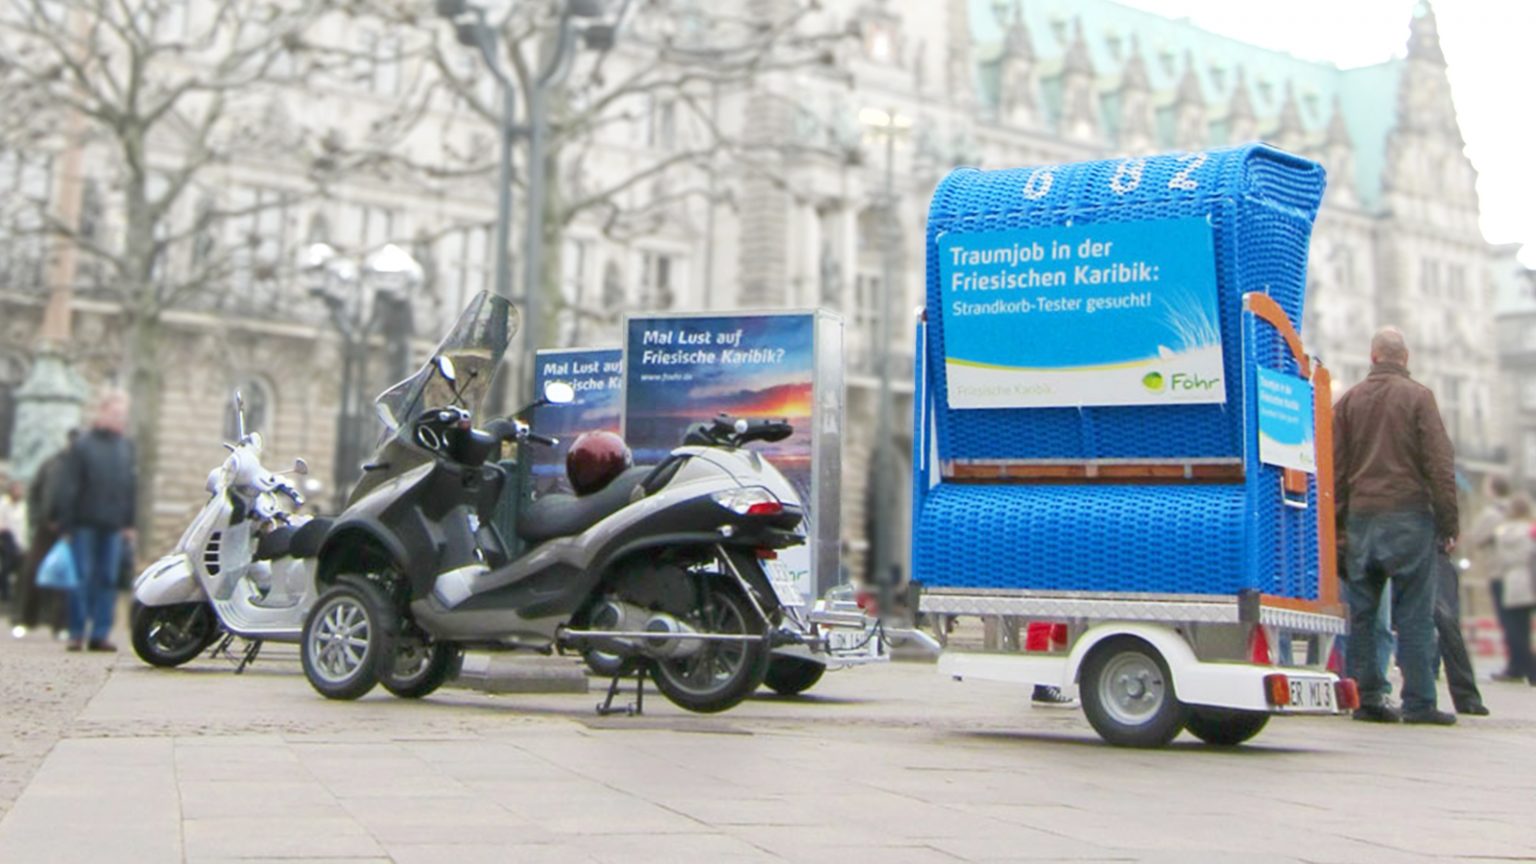 Föhr Guerilla-Marketing mit mobilem Strandkorb in Hamburg